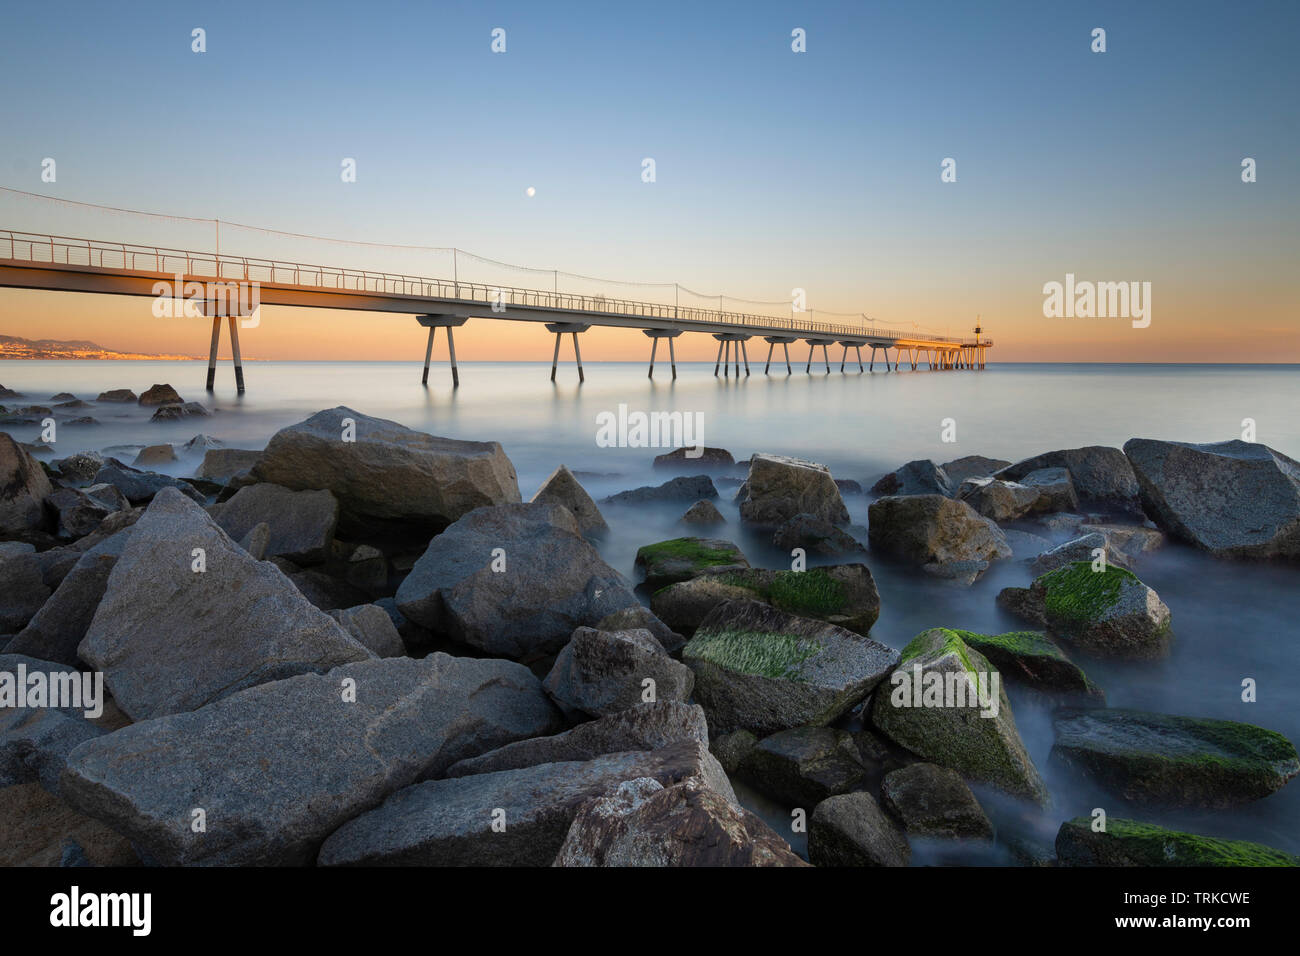 Puente en la playa al amanecer. Foto de stock